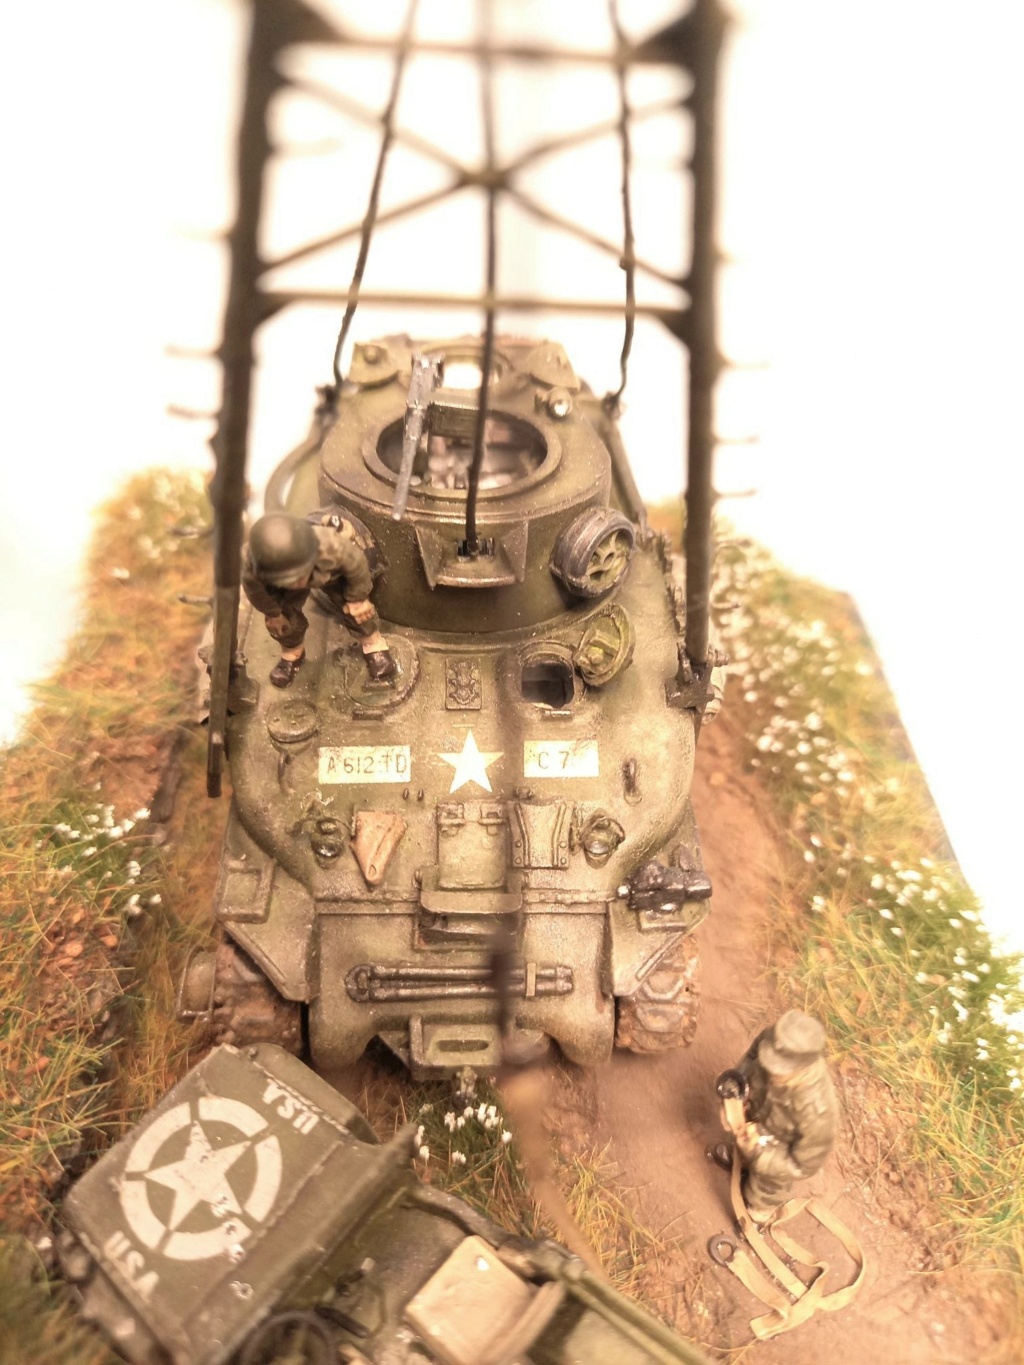 [U.M.] Sherman M32B1 TRV 18-110